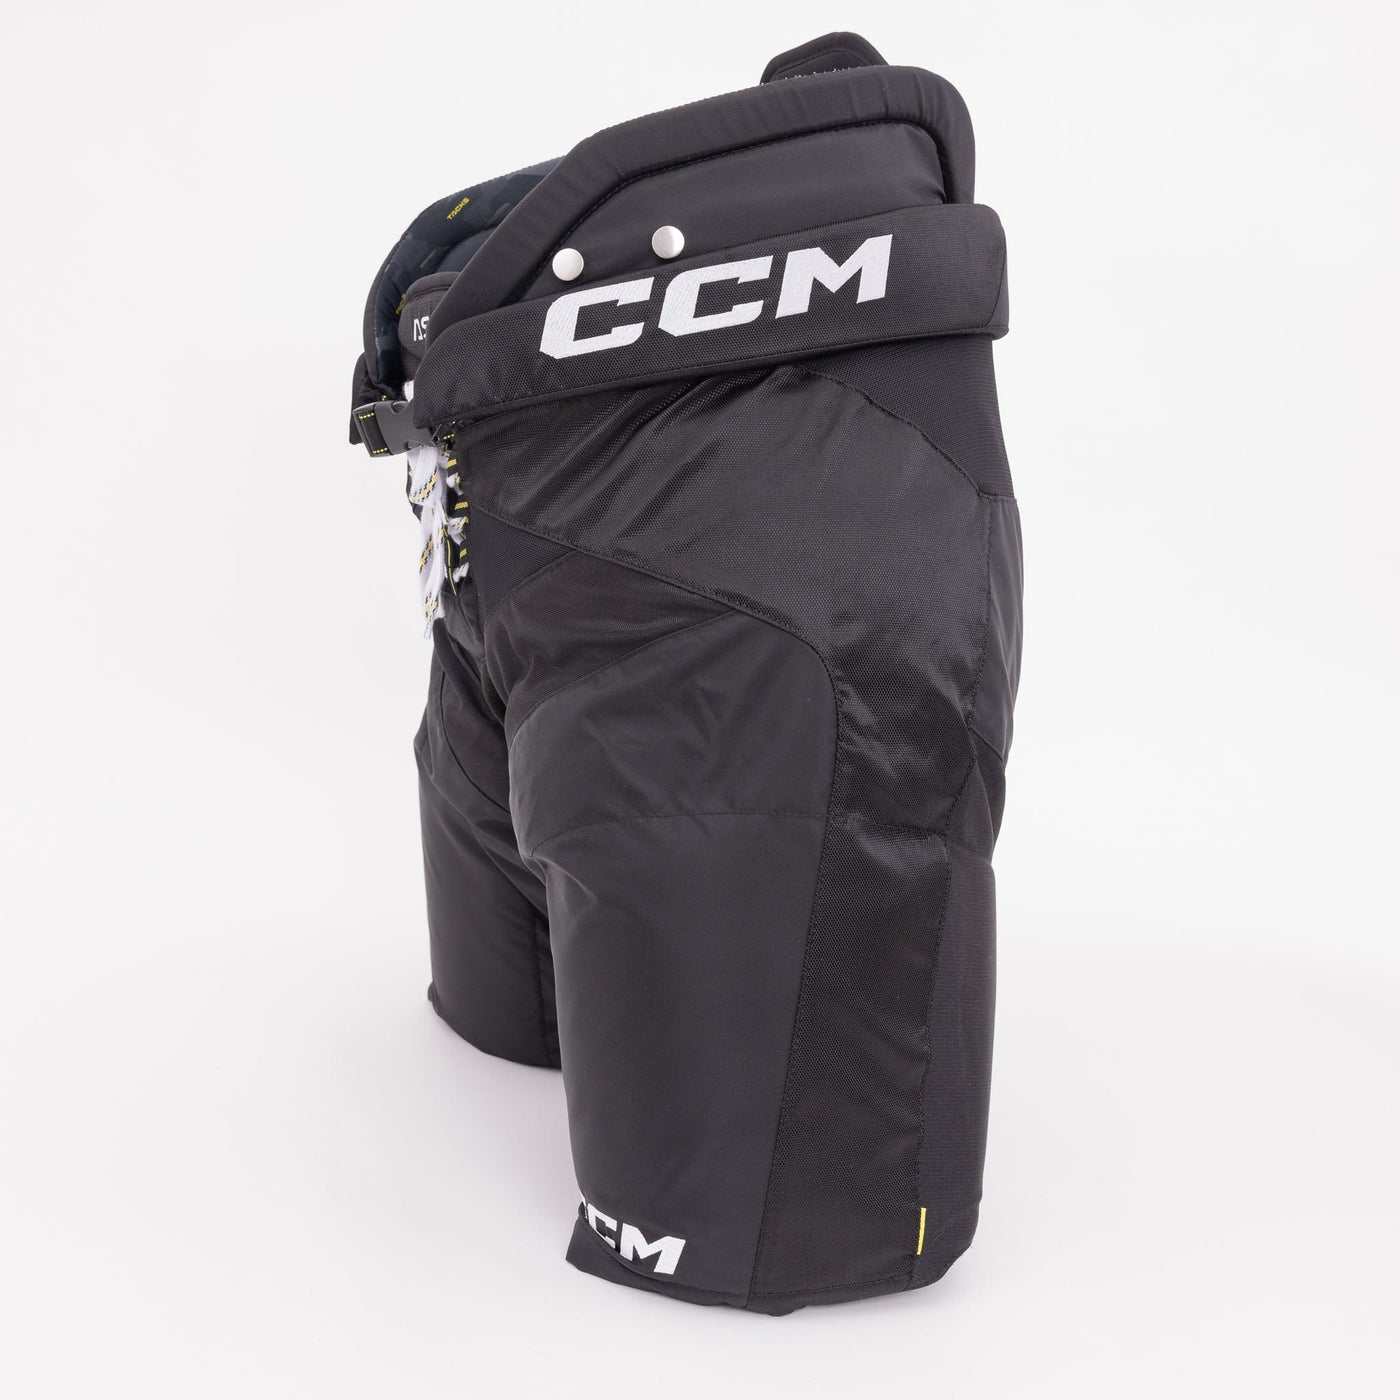 CCM Tacks AS-V Senior Hockey Pants